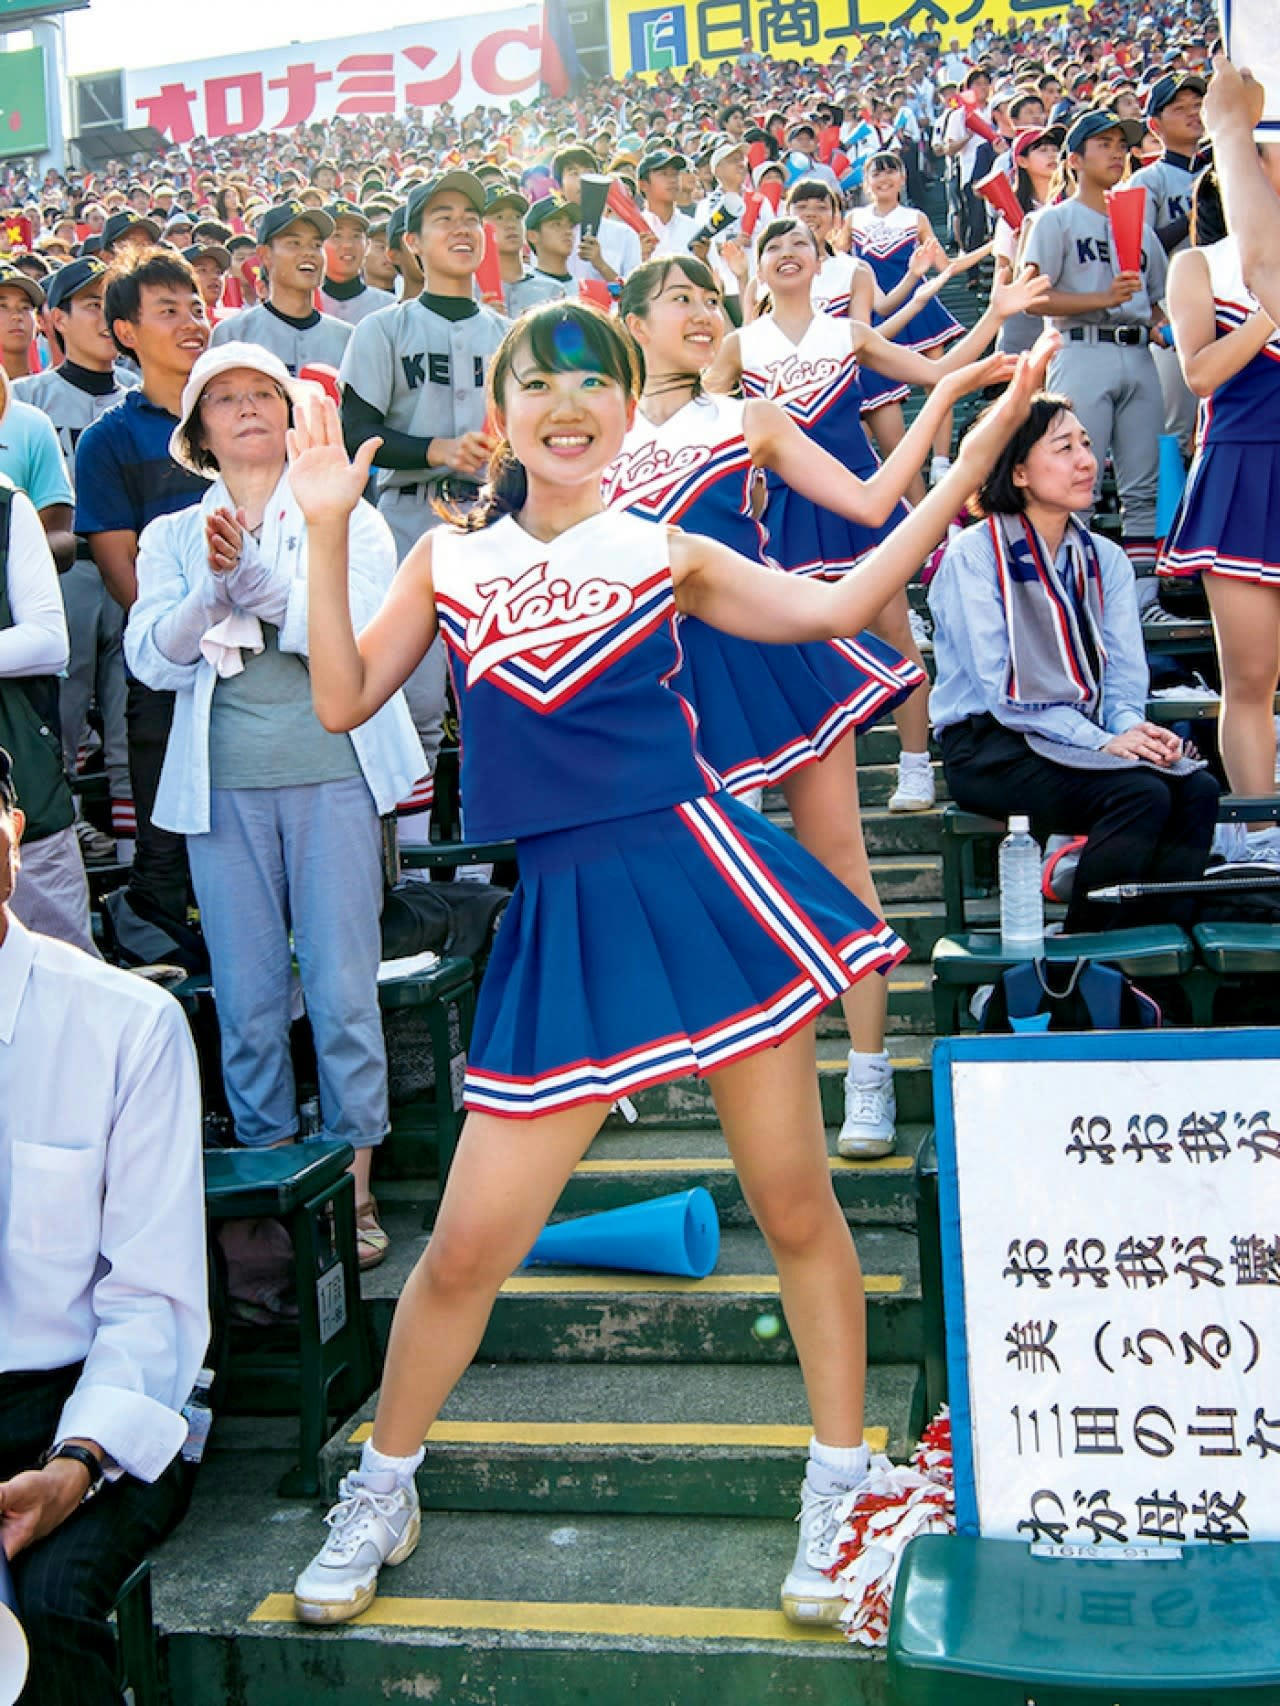   女子学生 チアガール画像 www.pinterest.jp